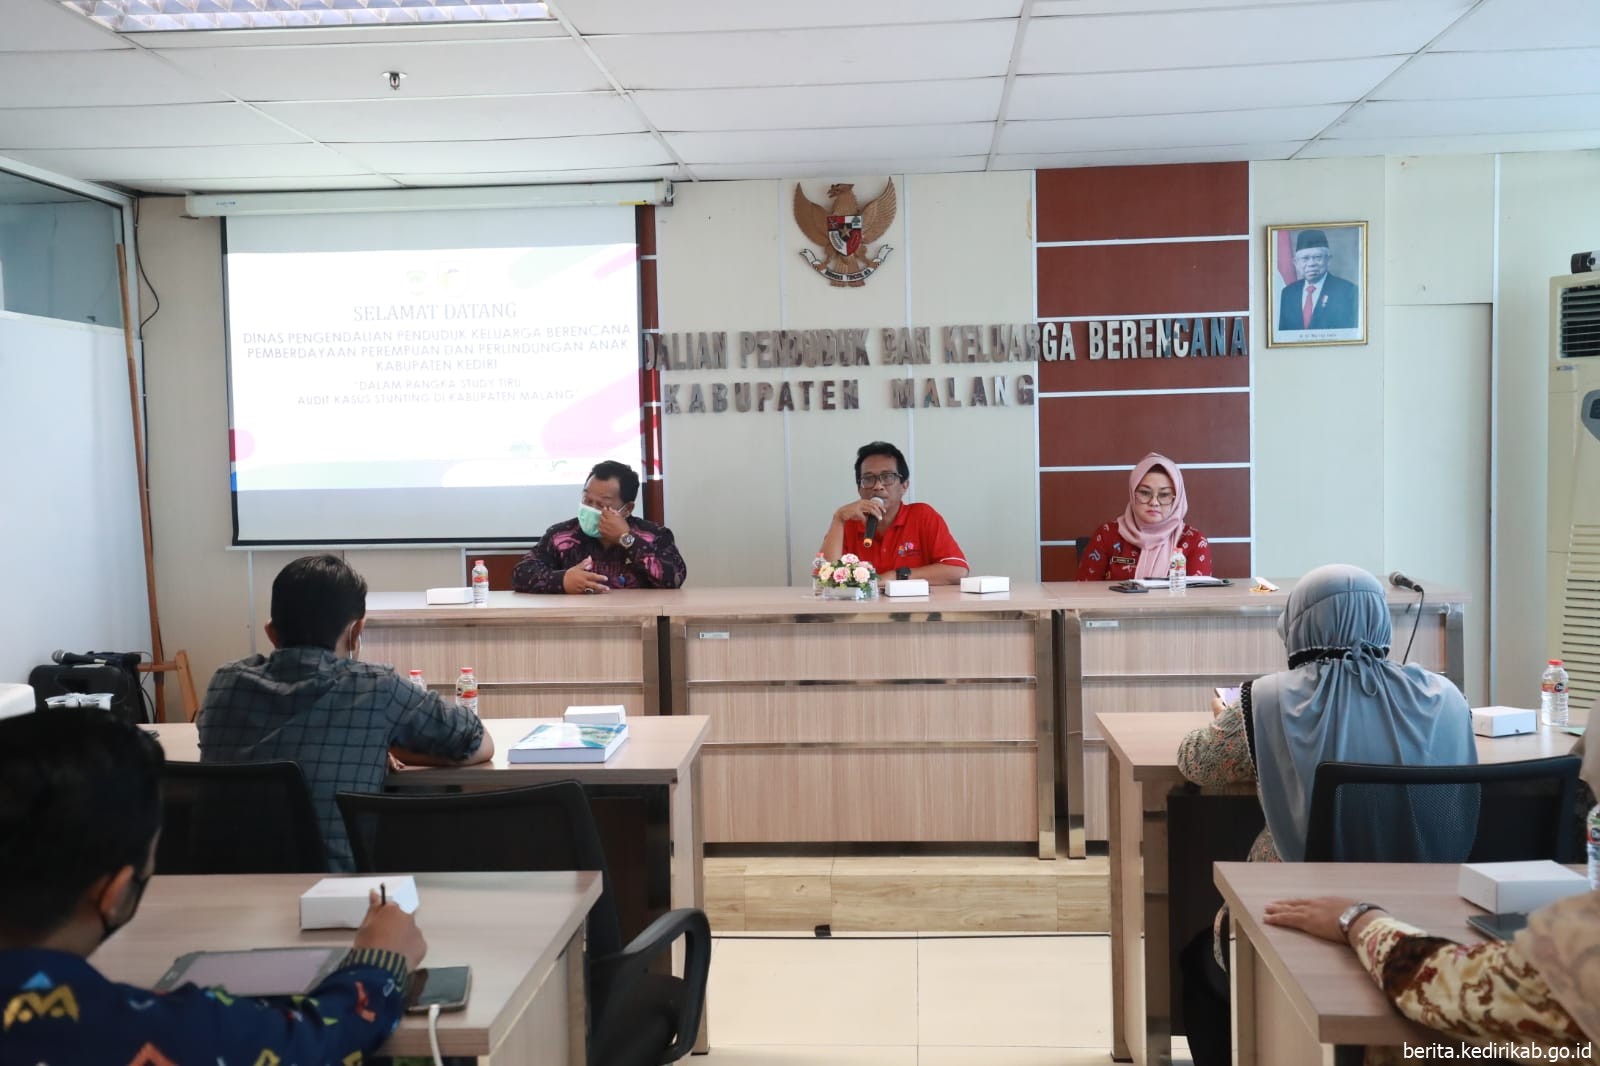 Untuk Capai Target 1 Digit Stunting, DP2KBP3A dan Tim Studi Tiru ke Kabupaten Malang